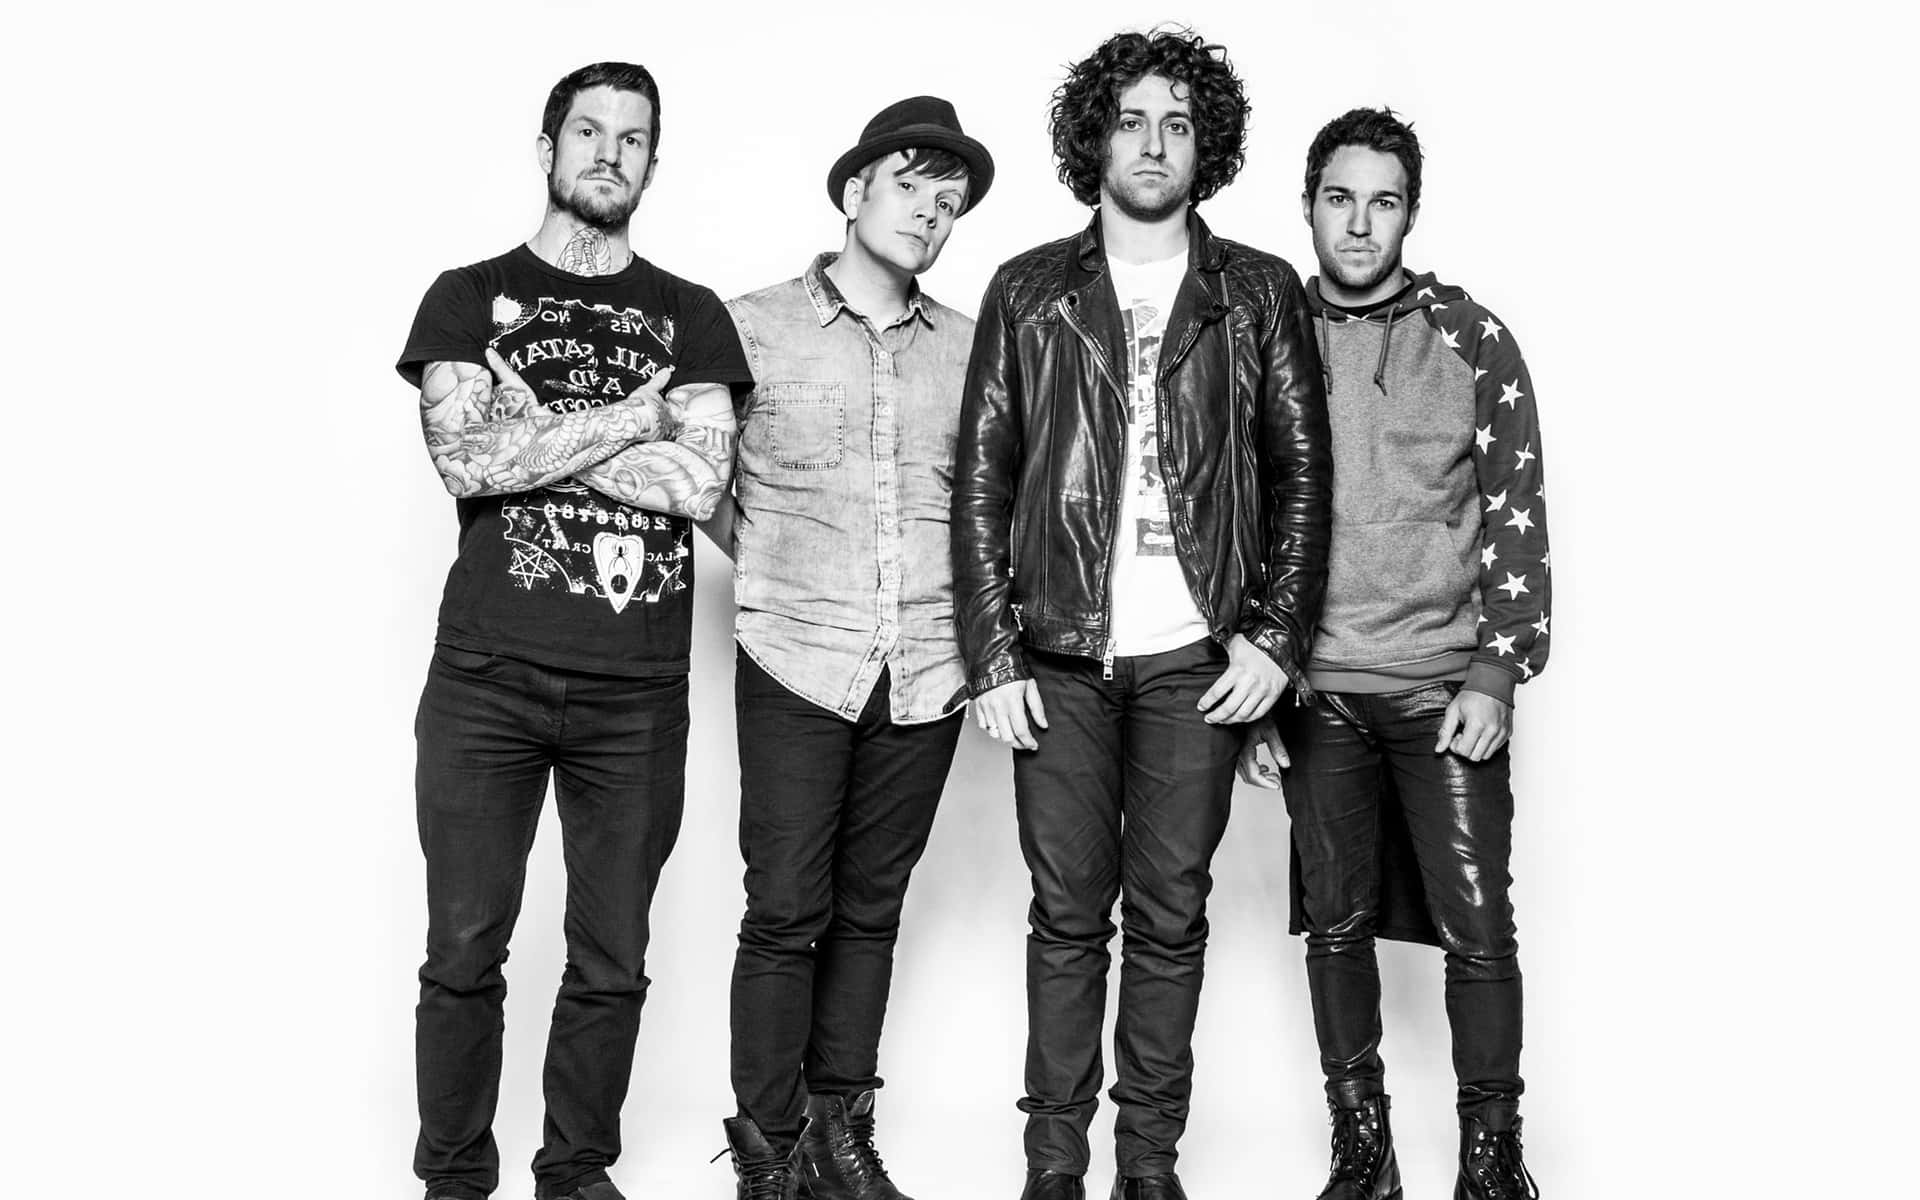 Fall Out Boy engagerer fans gennem musik og sociale medier. Wallpaper